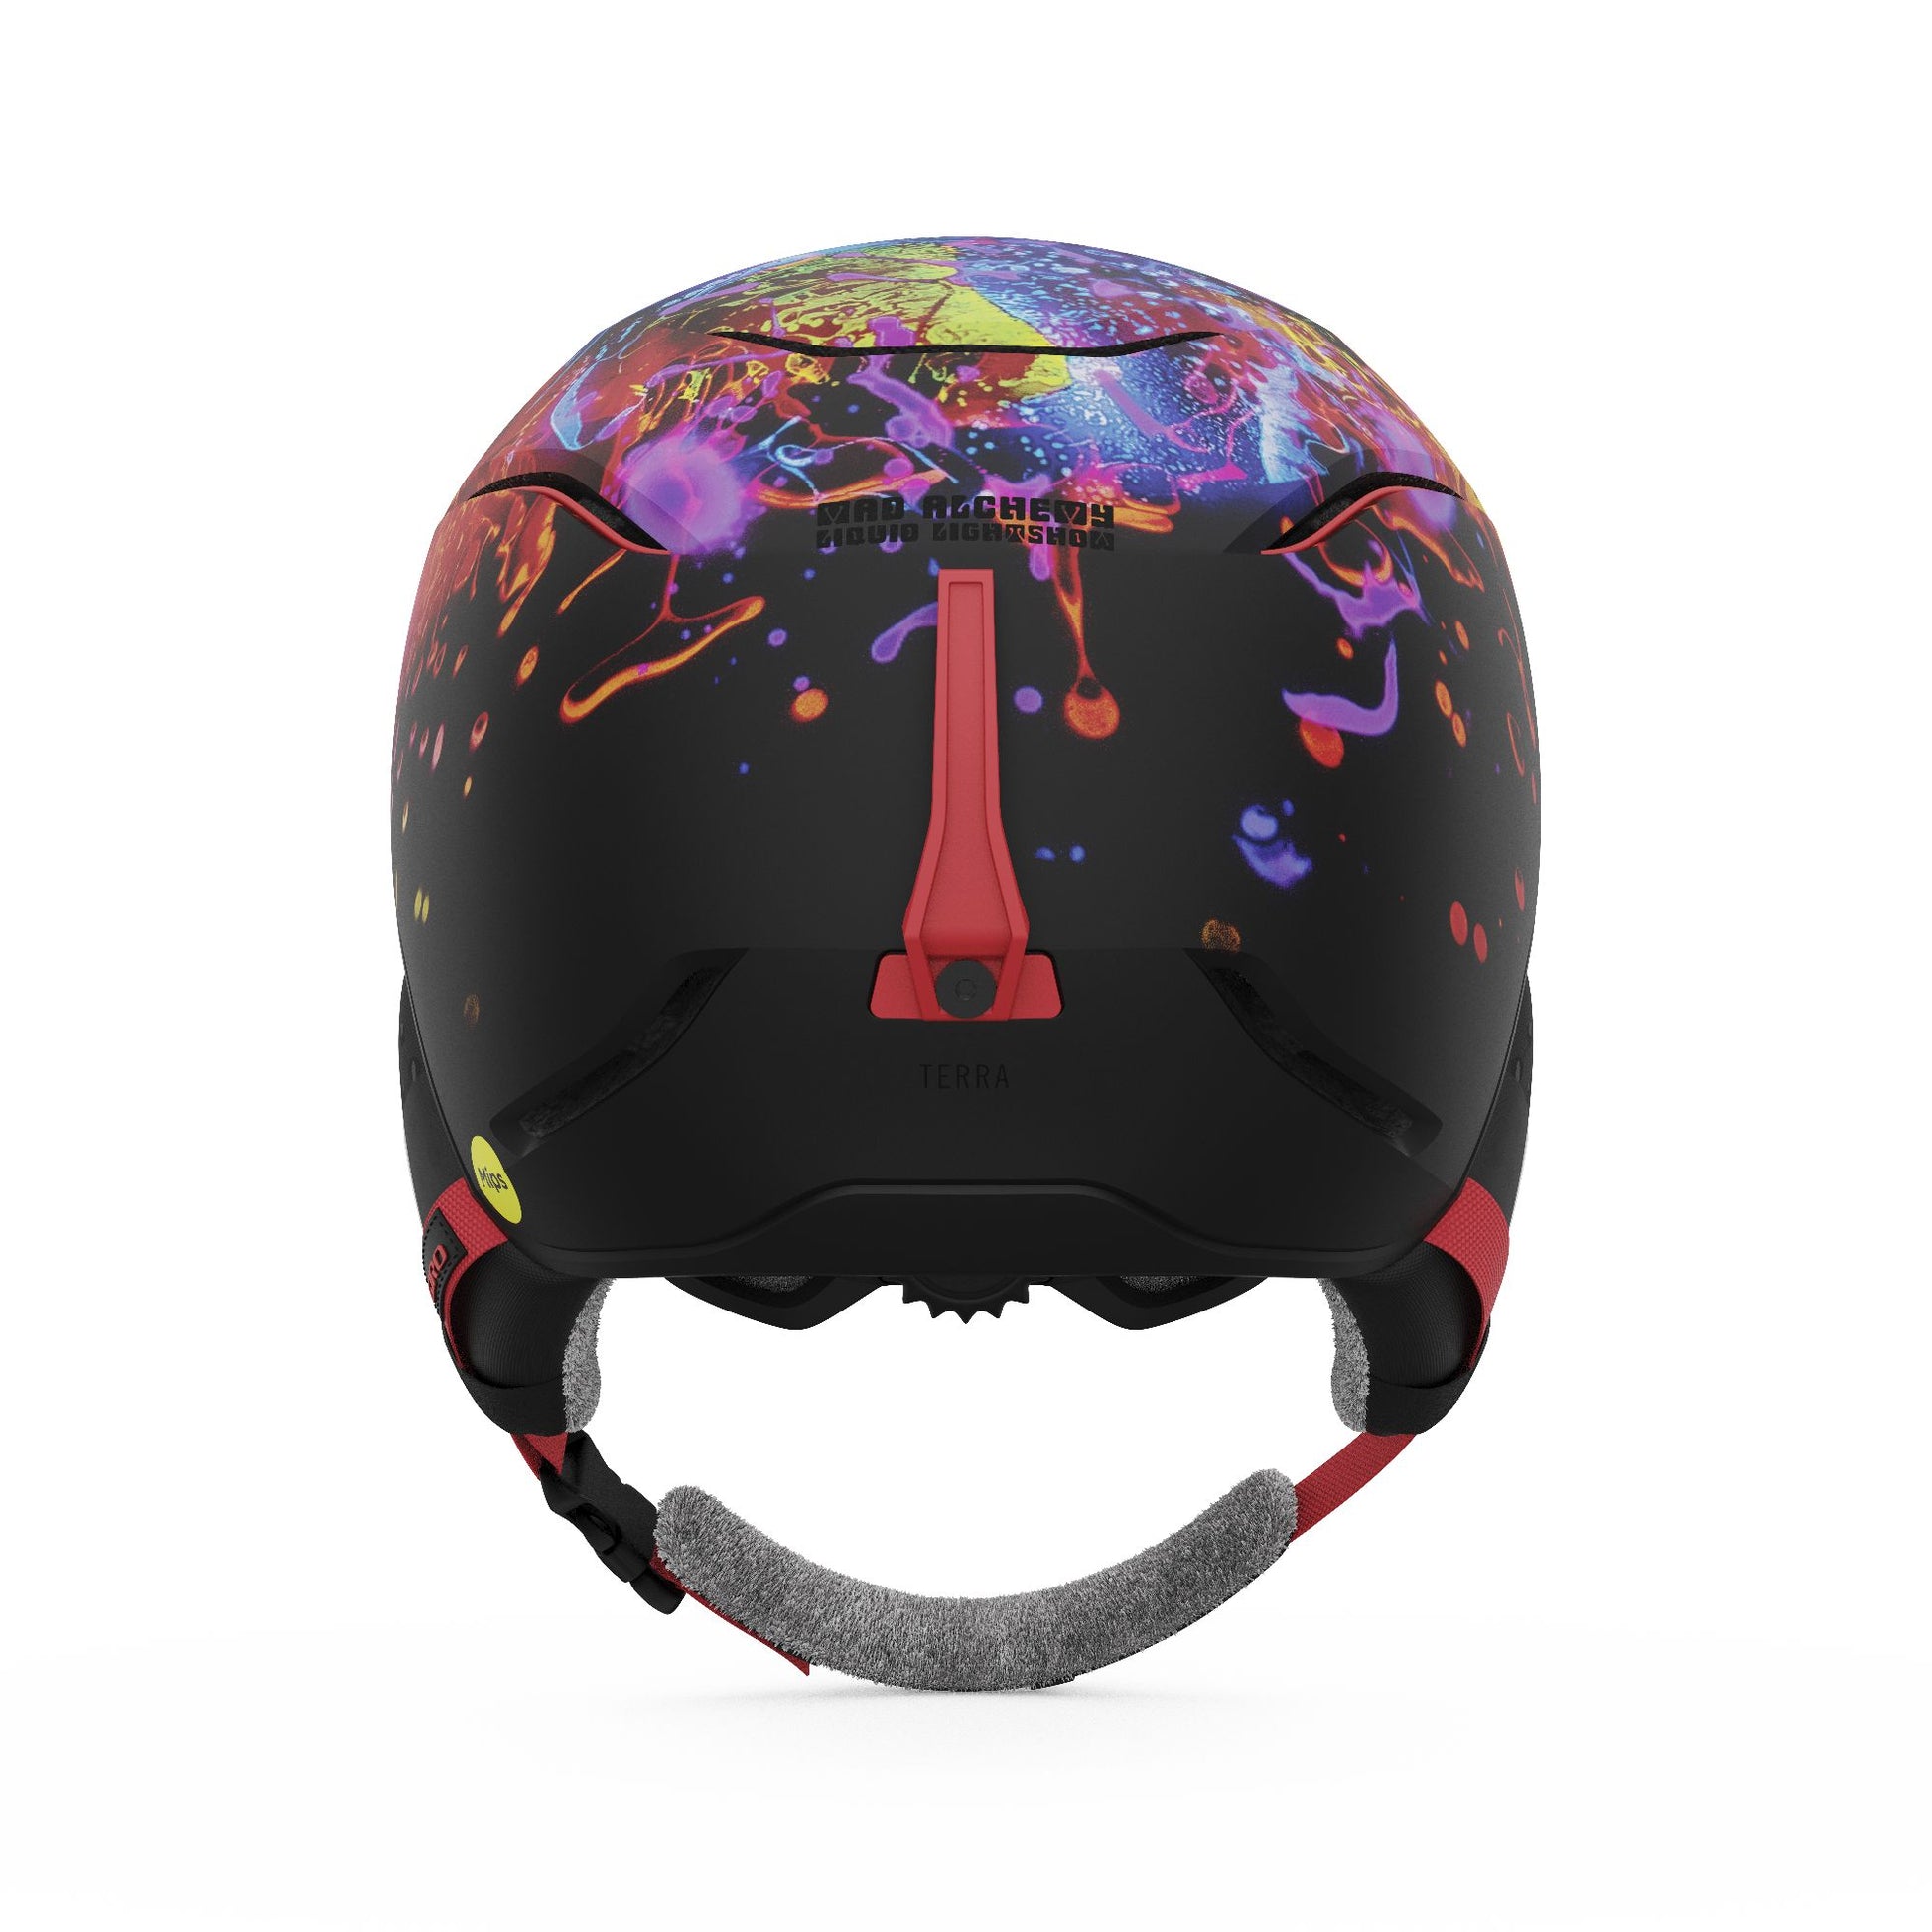 Giro Women's Terra MIPS Helmet Matte Black Teal Liquid Light S Snow Helmets